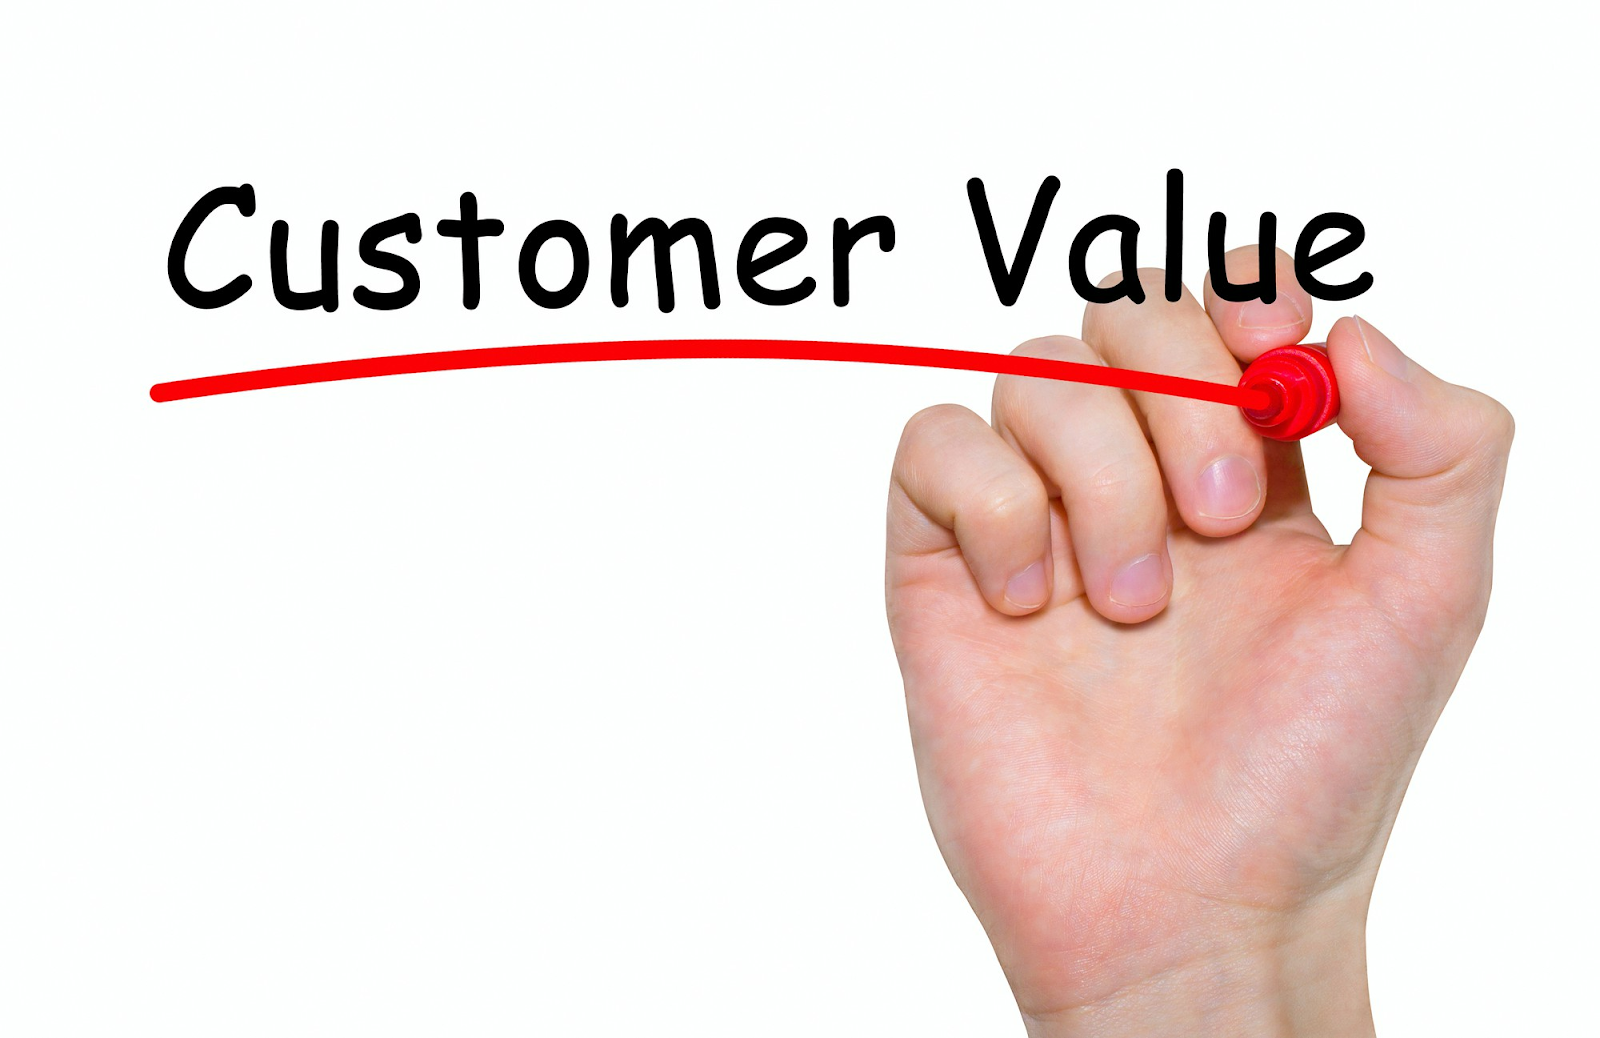 Customer value sebagai kepuasaan pelanggan